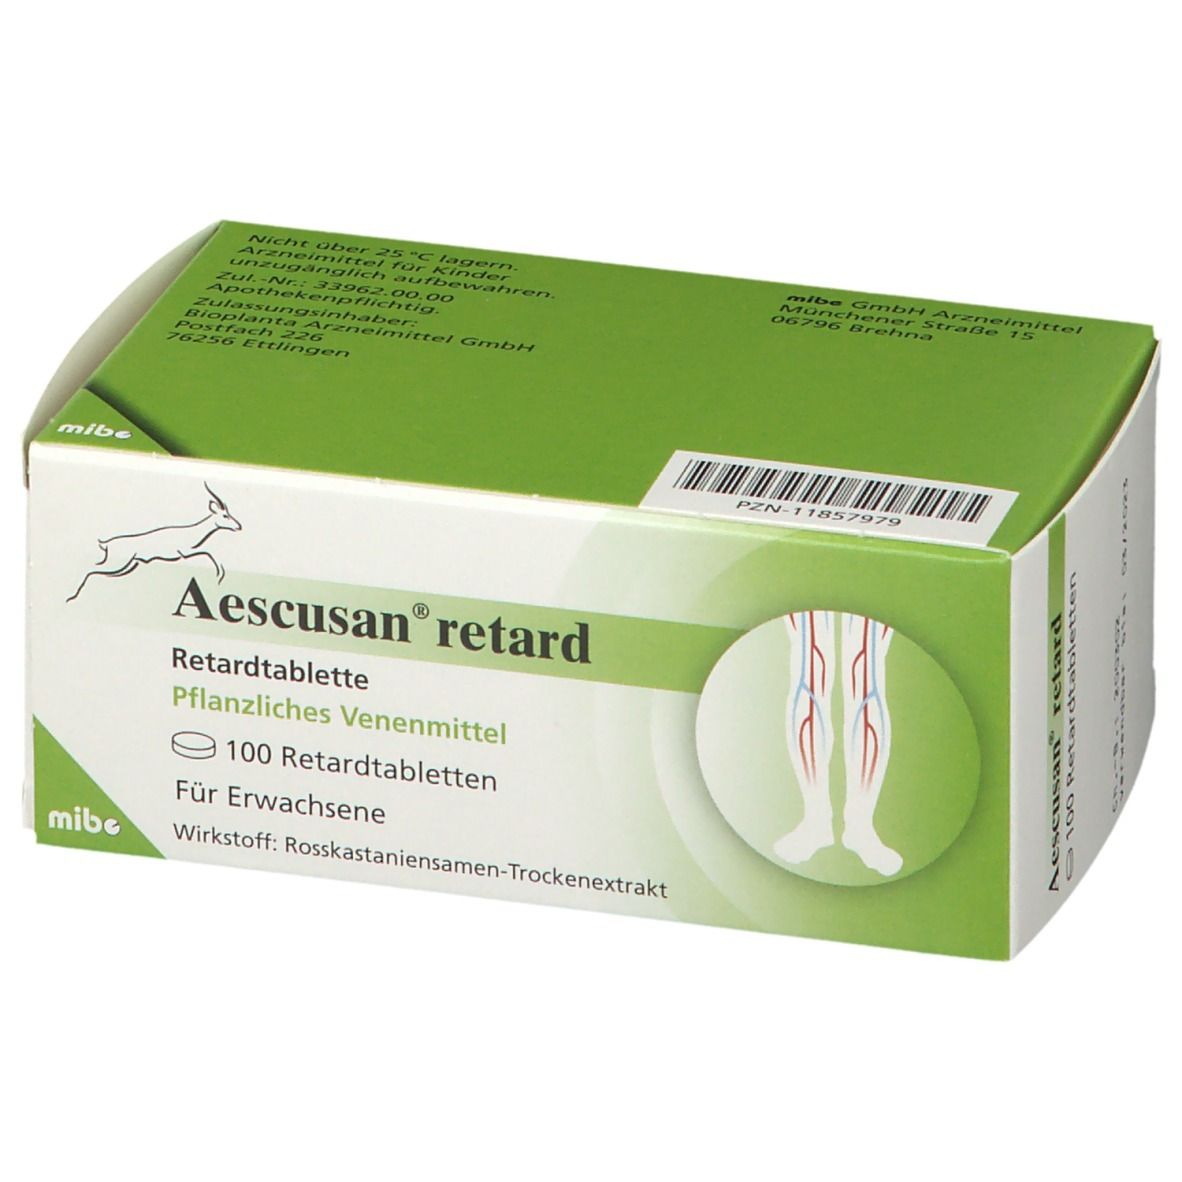 Aescusan® retard